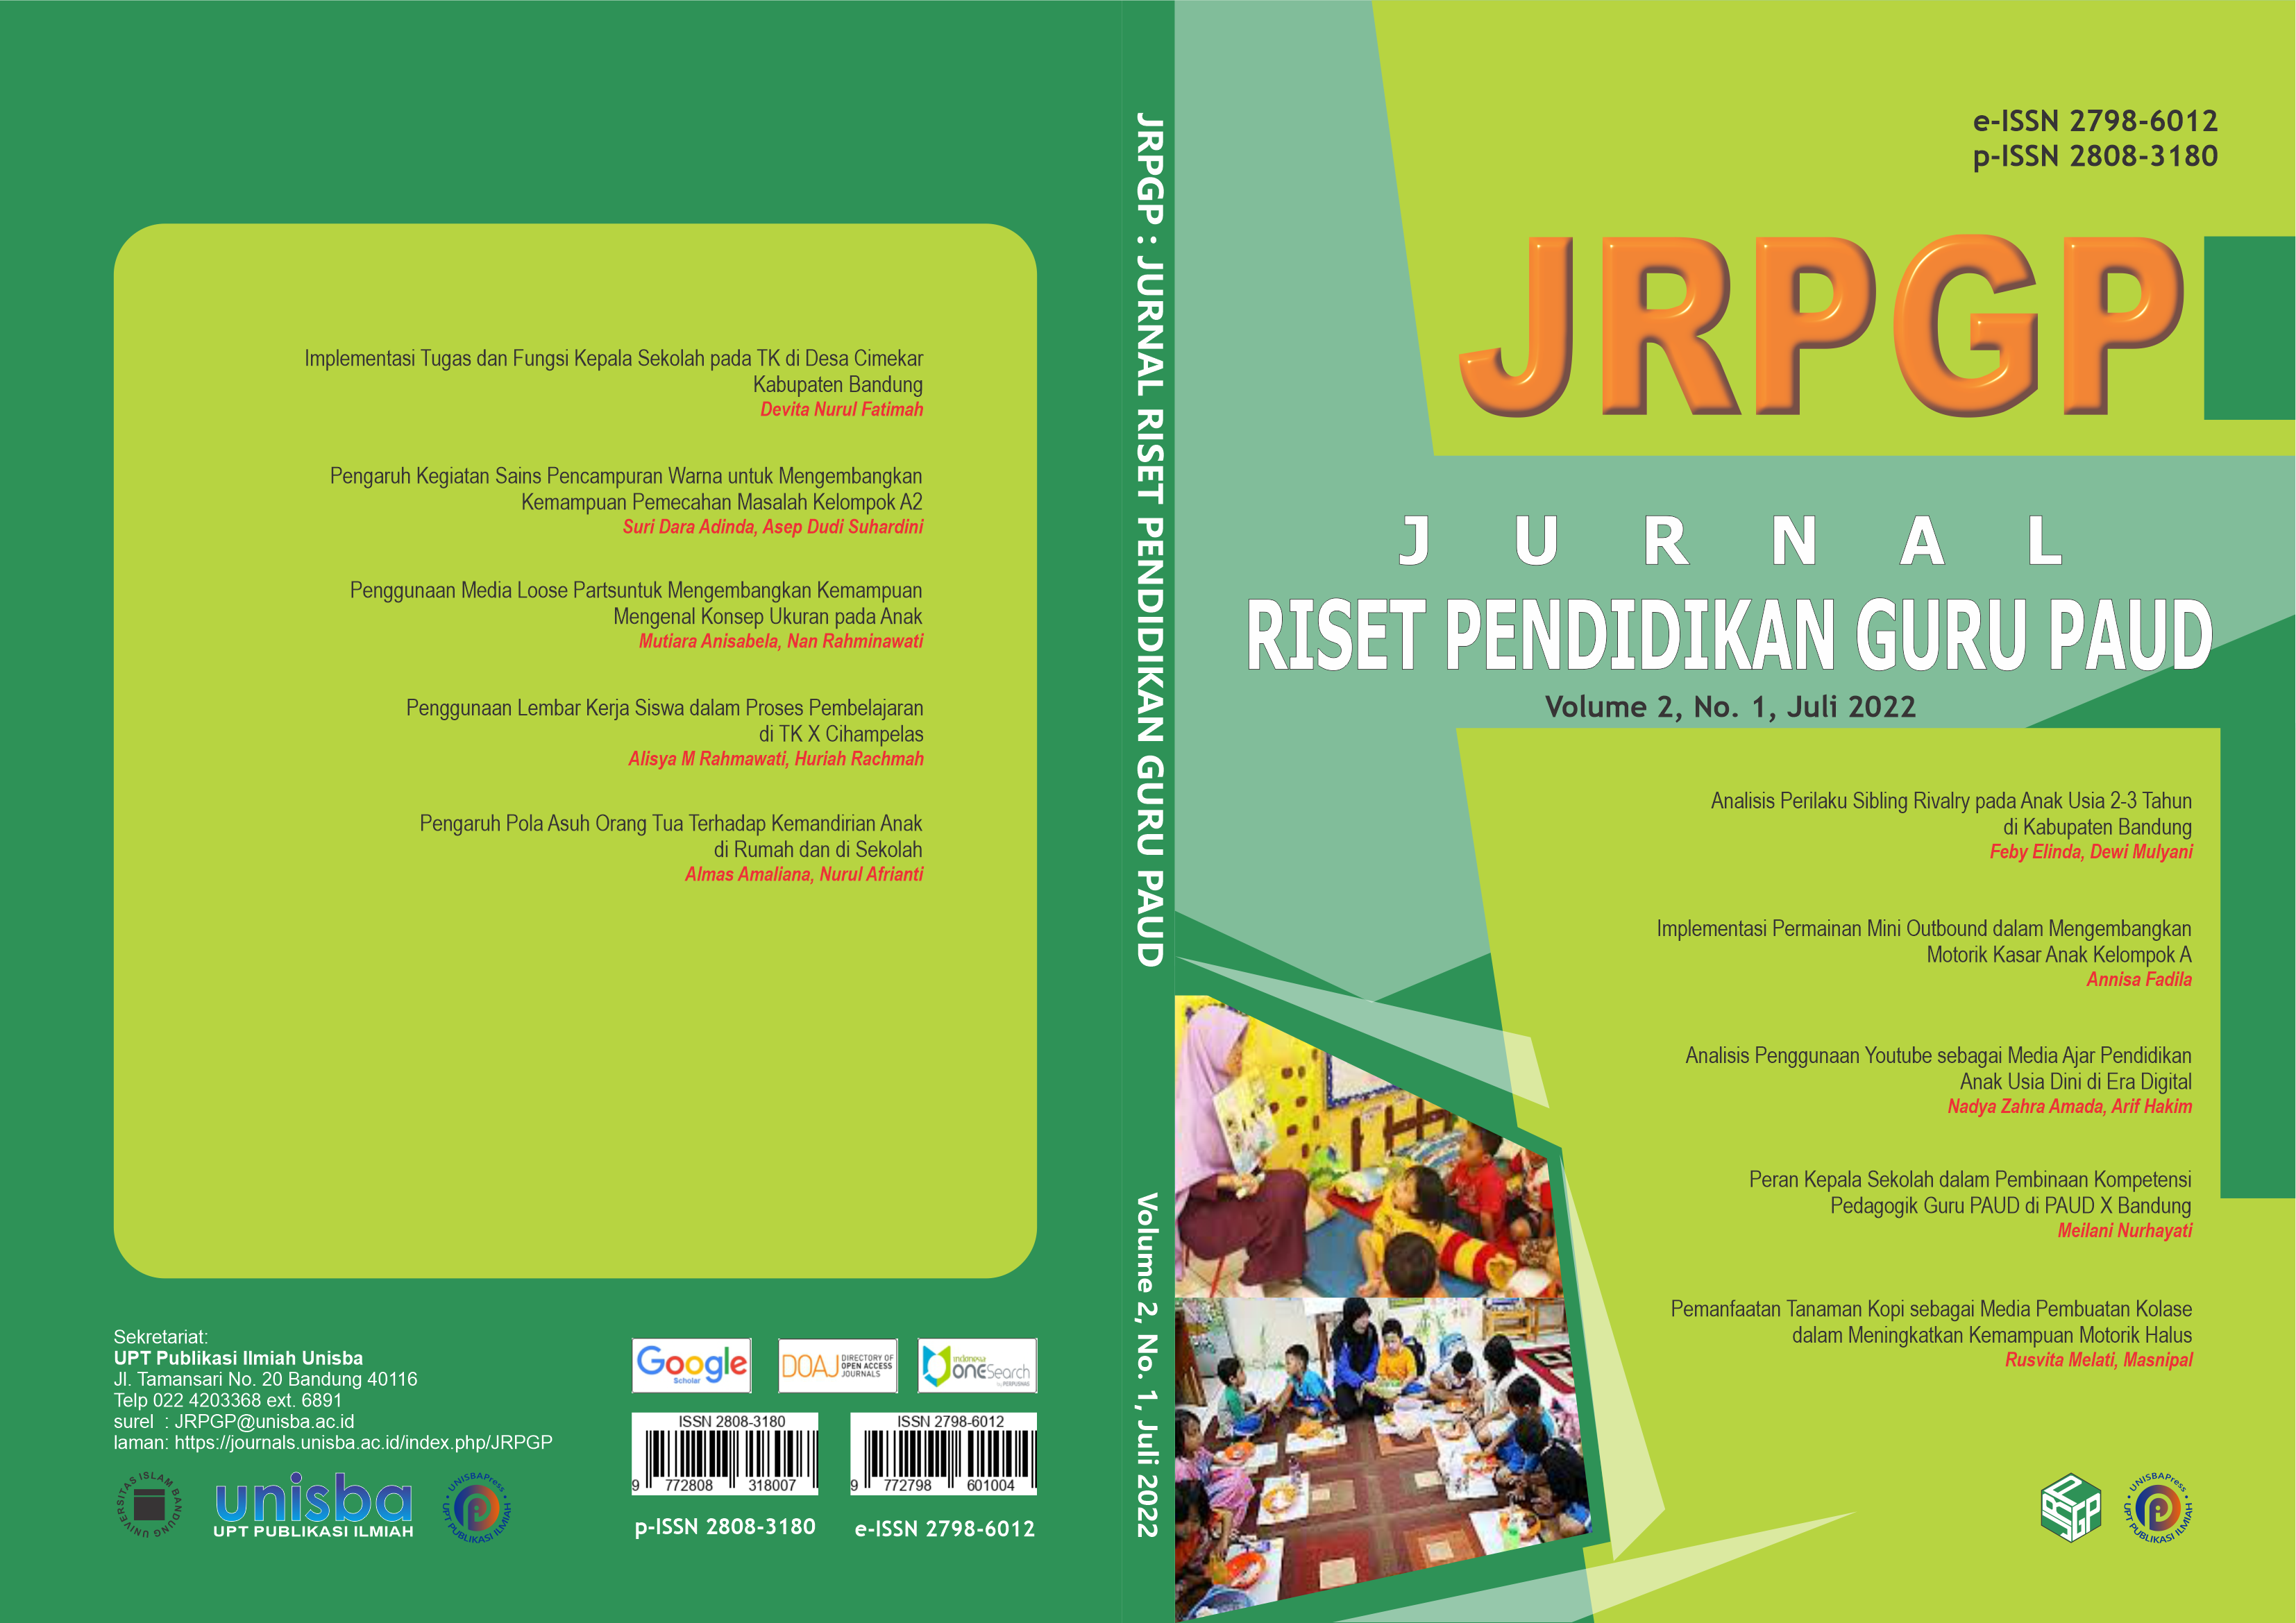 					View Volume 2, No. 1, Juli 2022, Jurnal Riset Pendidikan Guru Paud (JRPGP)
				